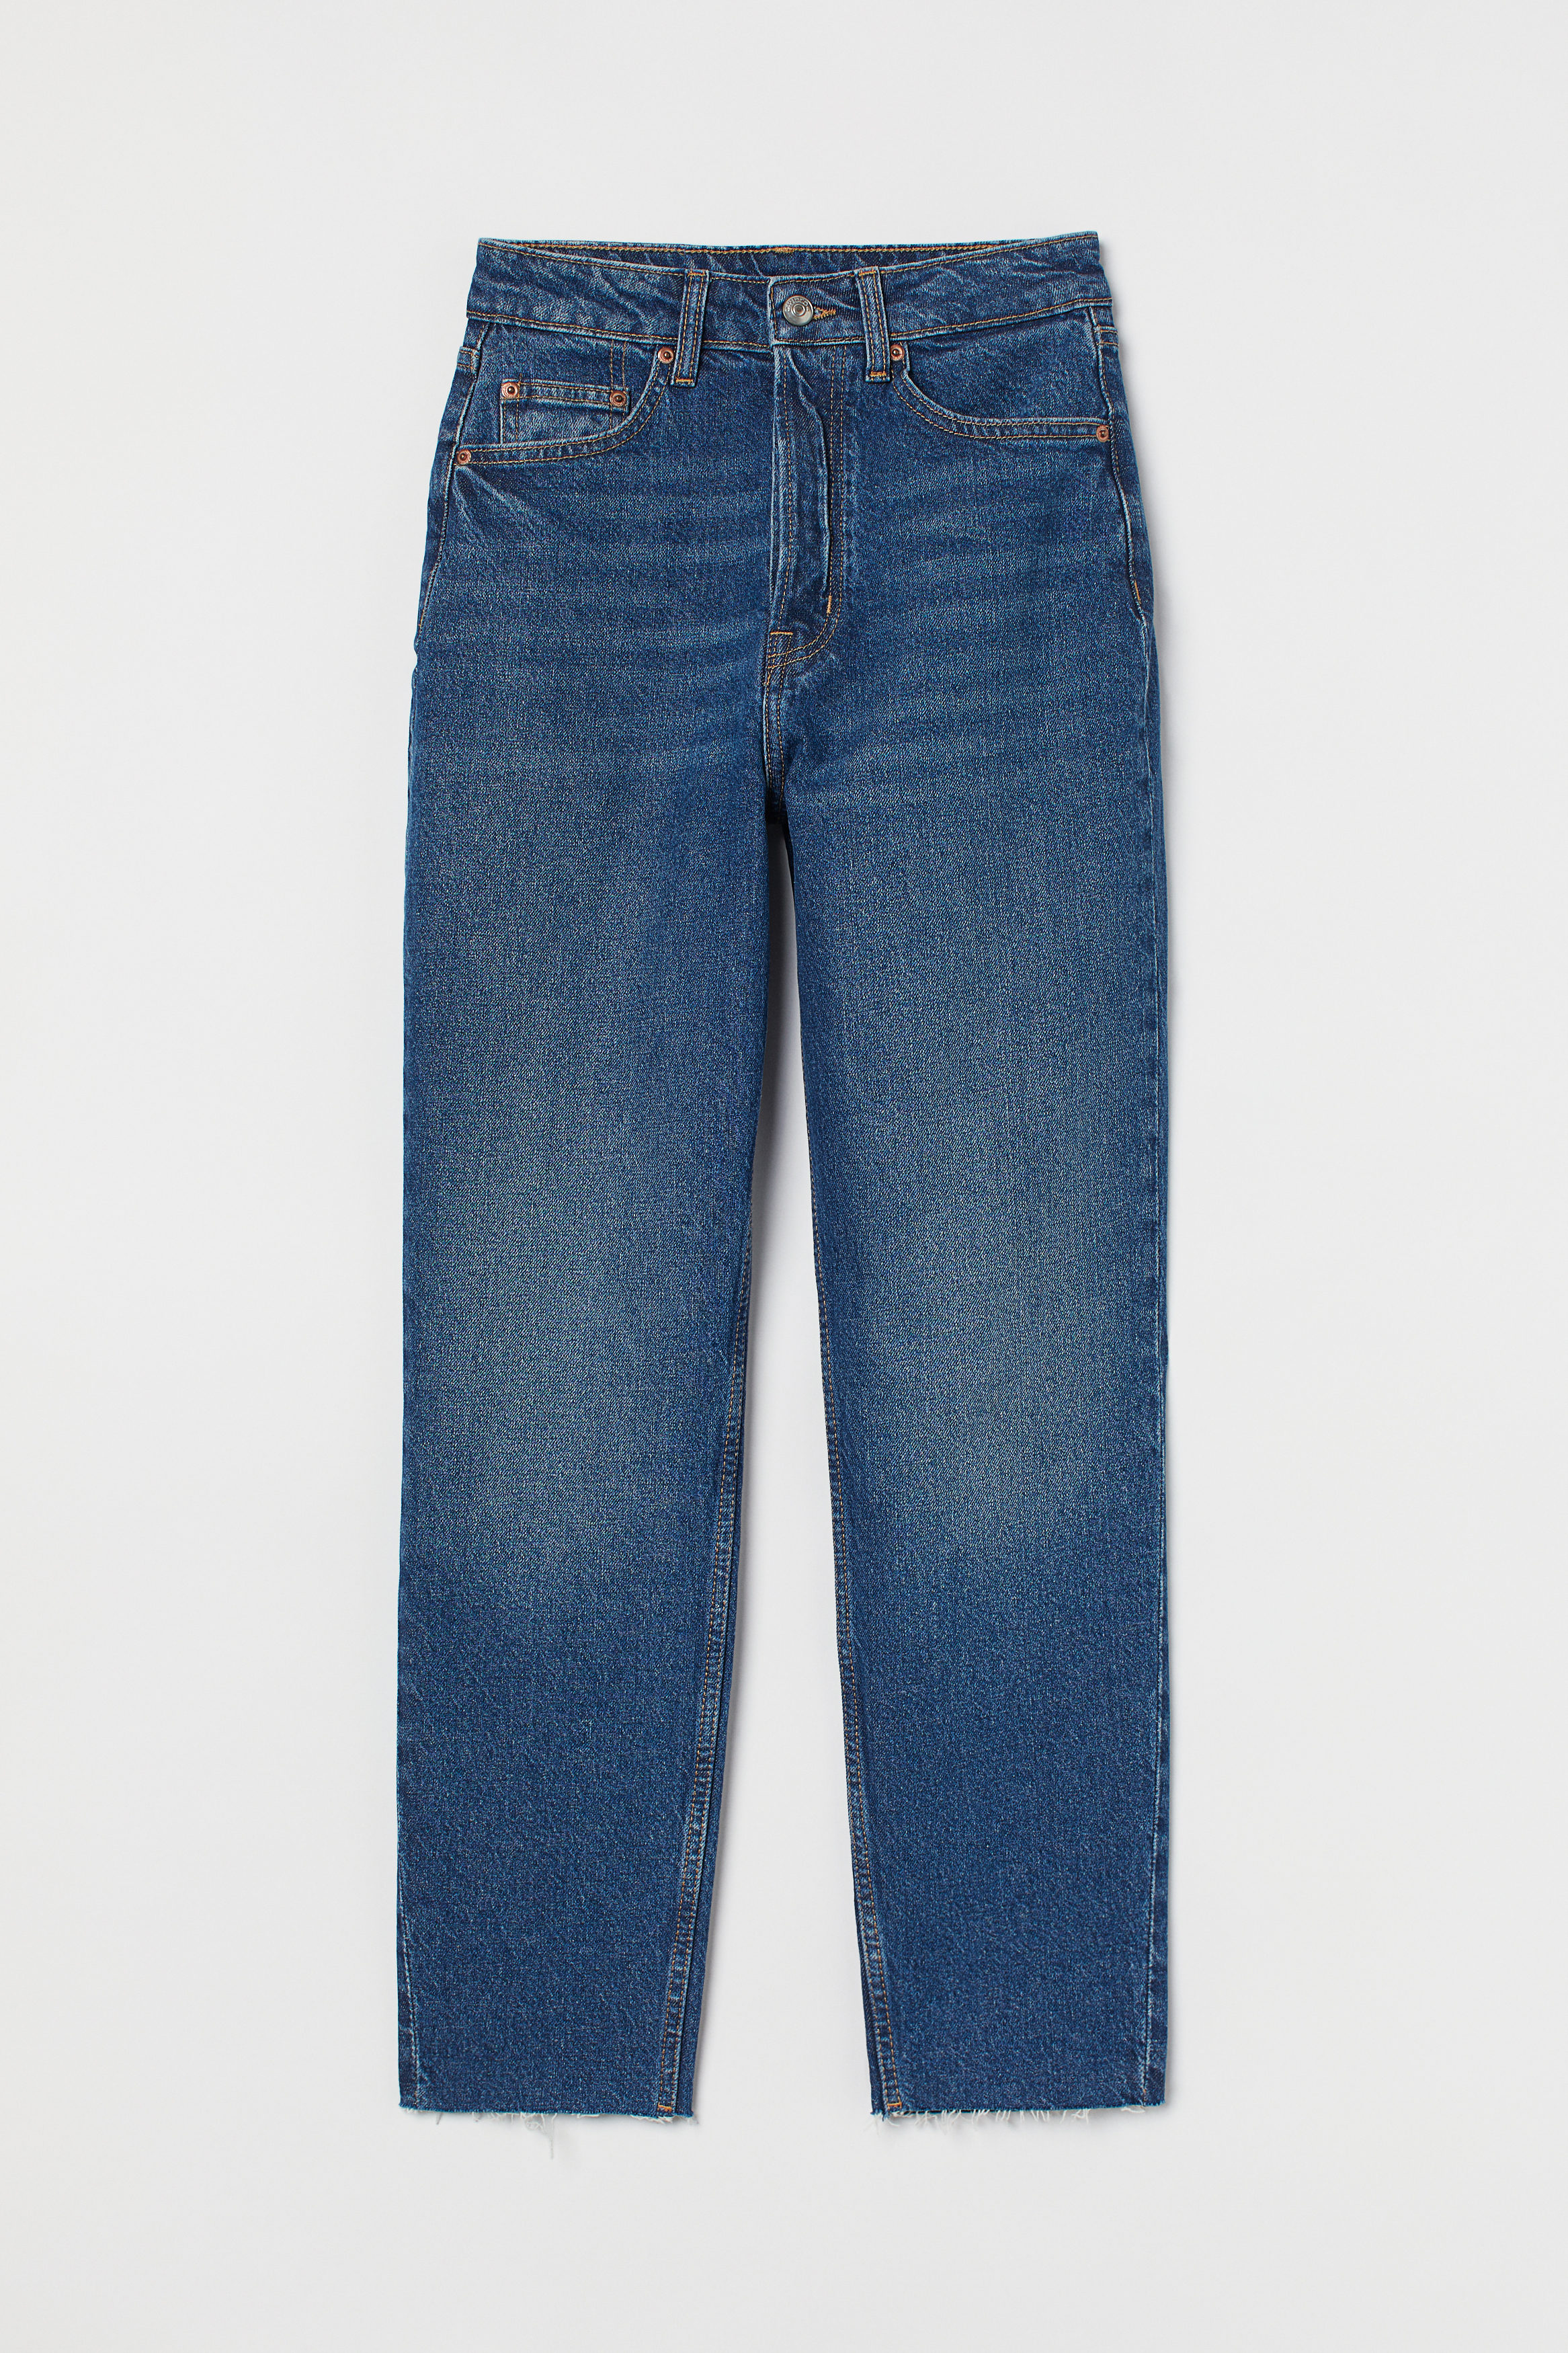 Blau 34 DAMEN Jeans Boyfriend jeans Ripped Rabatt 67 % Zara Boyfriend jeans 